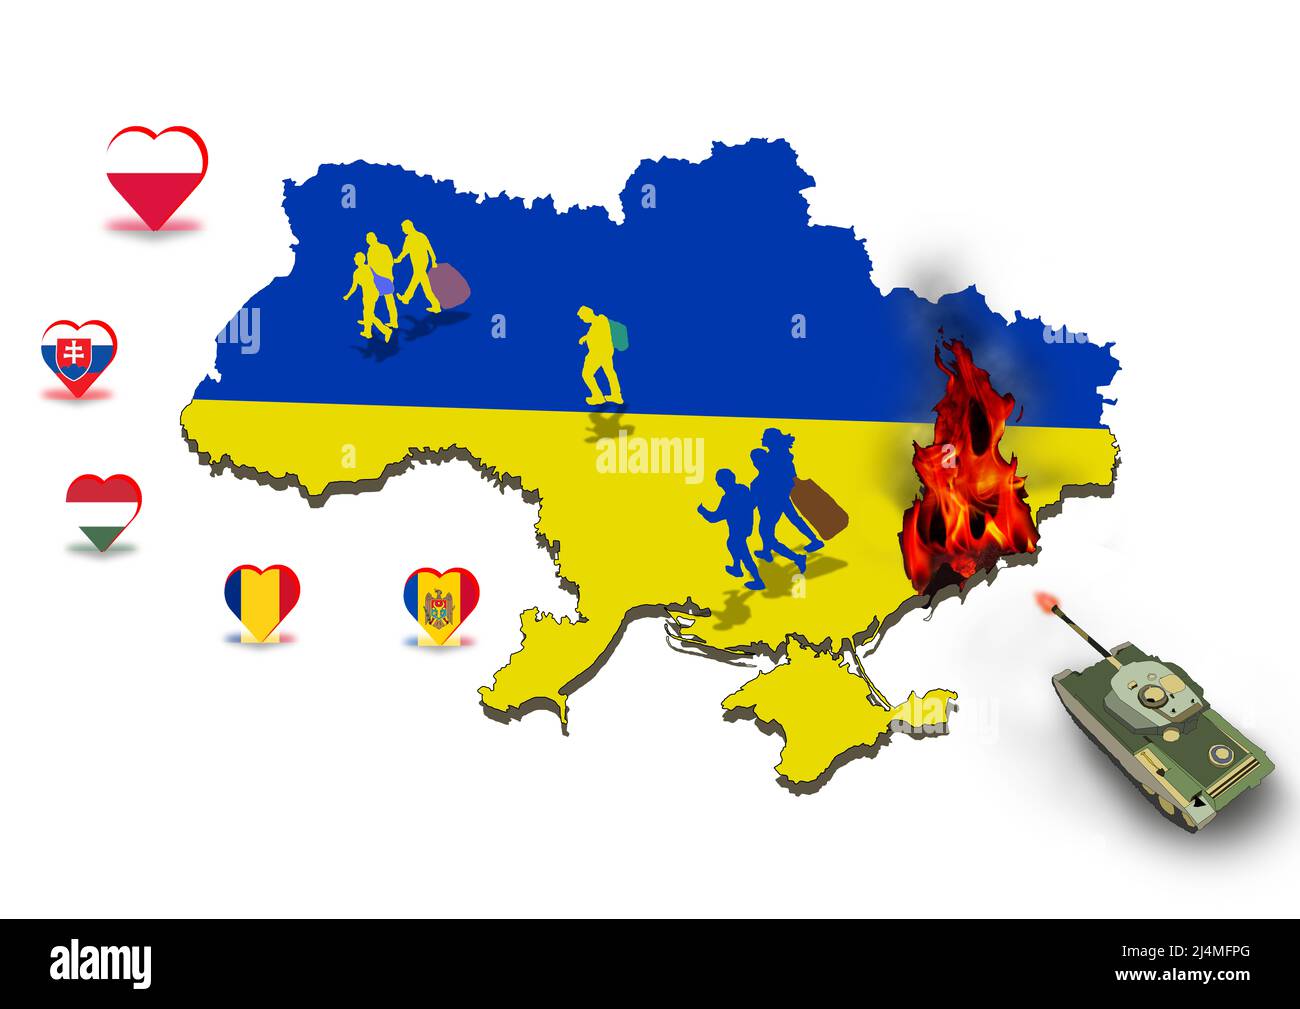 ukrainische Flüchtlinge bewegen sich für russischen Panzerangriff in mariupol Illustration Stockfoto